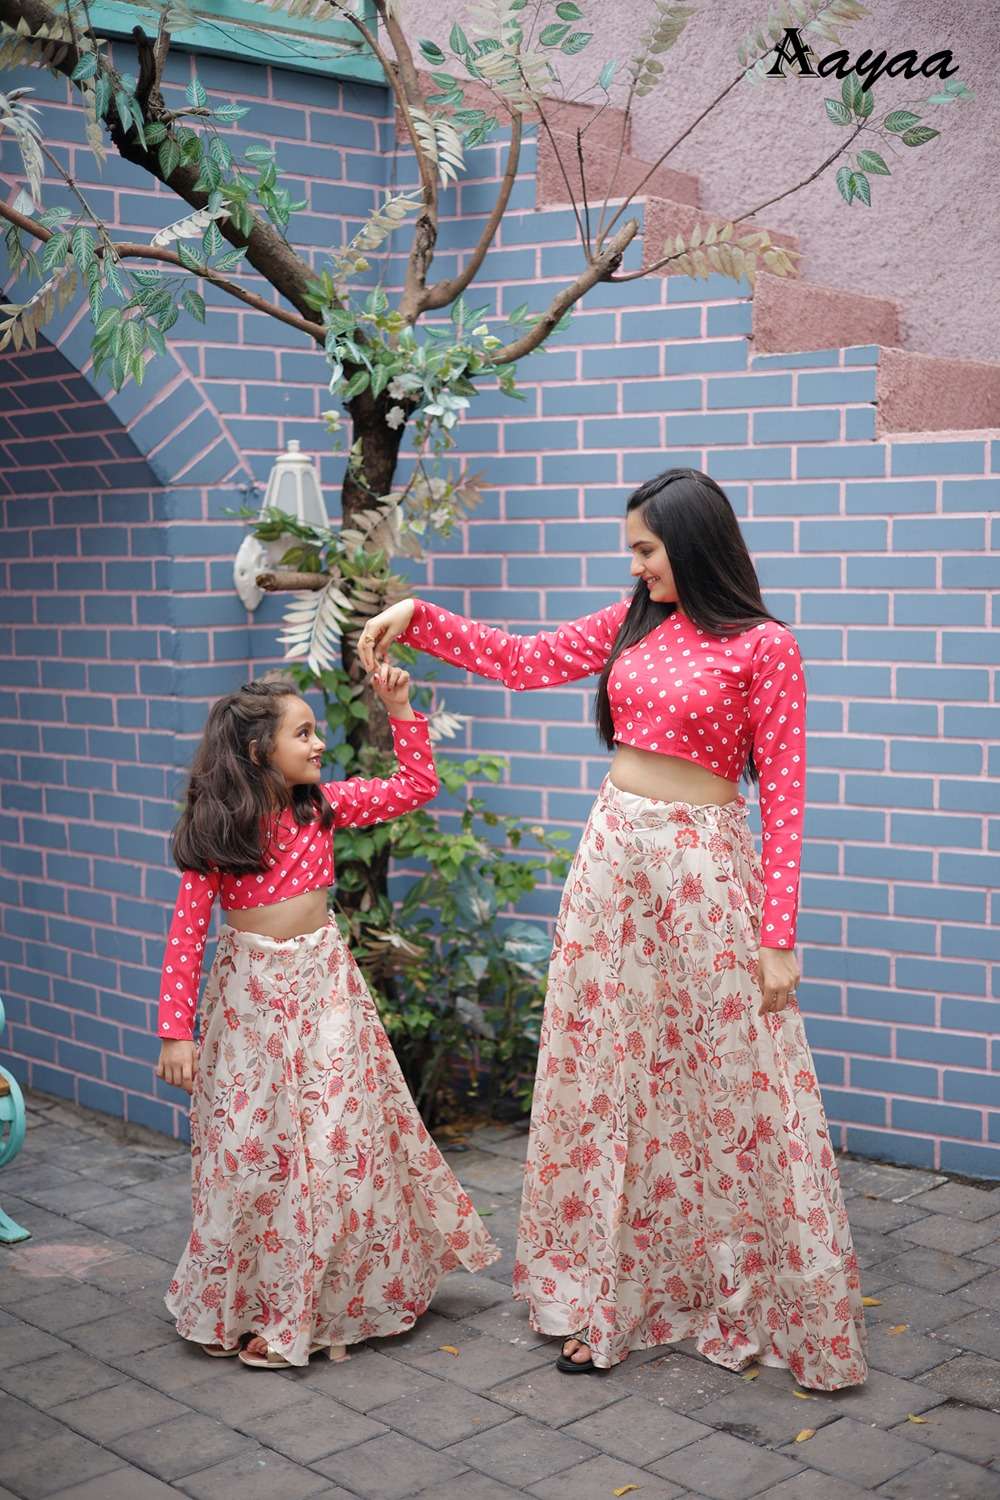 Divisha vol 2 By Aayaa Couple matching outfit Wholesate catalog